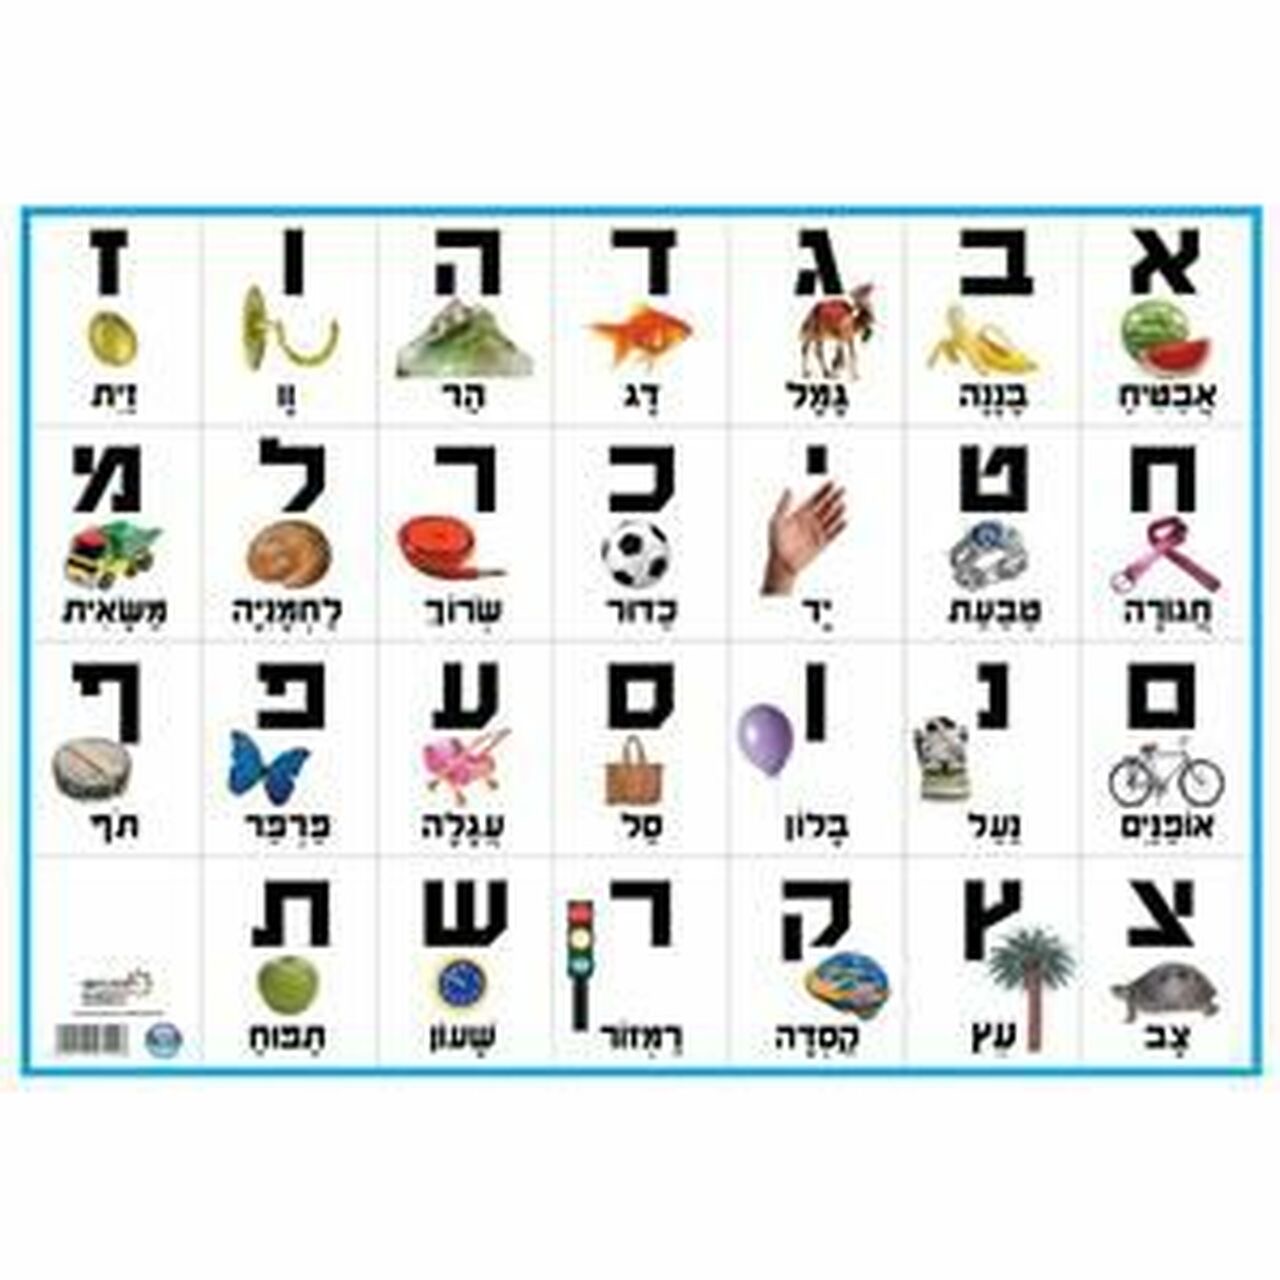 Hebrew - Year 3 - Quizizz